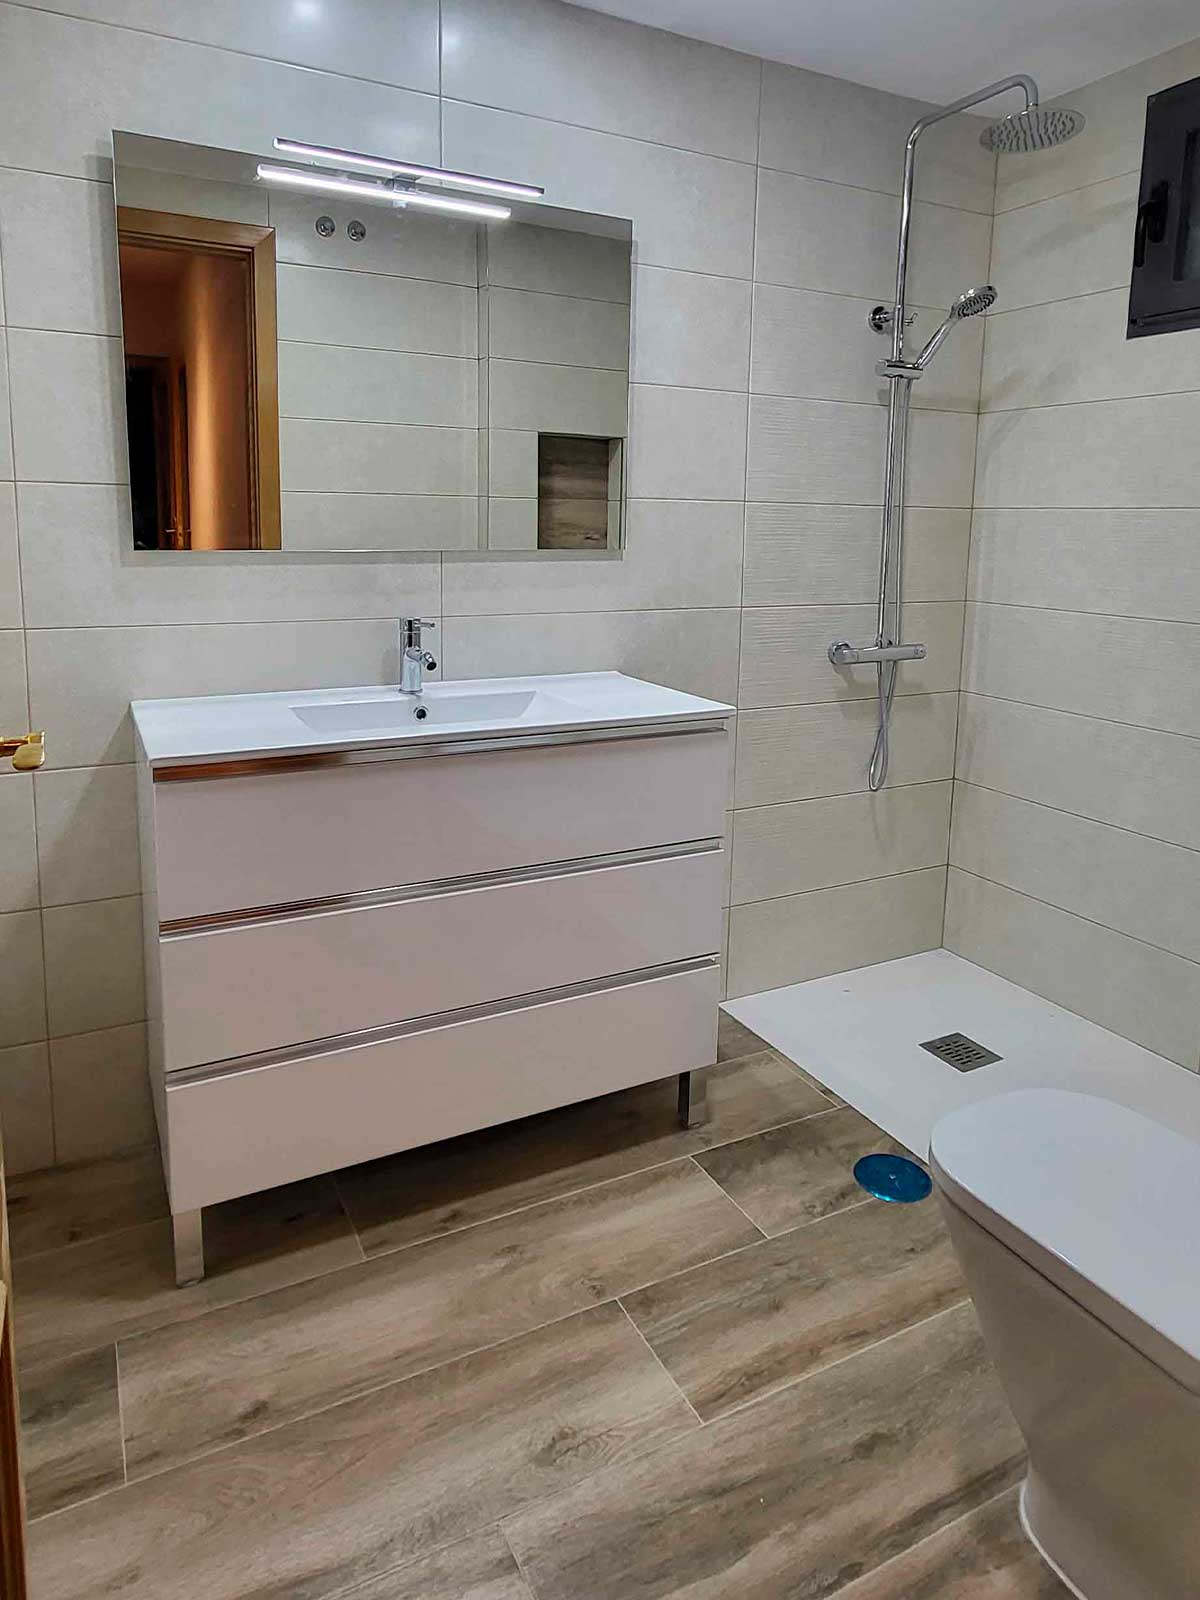 Baño reformado por Zanfona Proyectos en Valladolid.